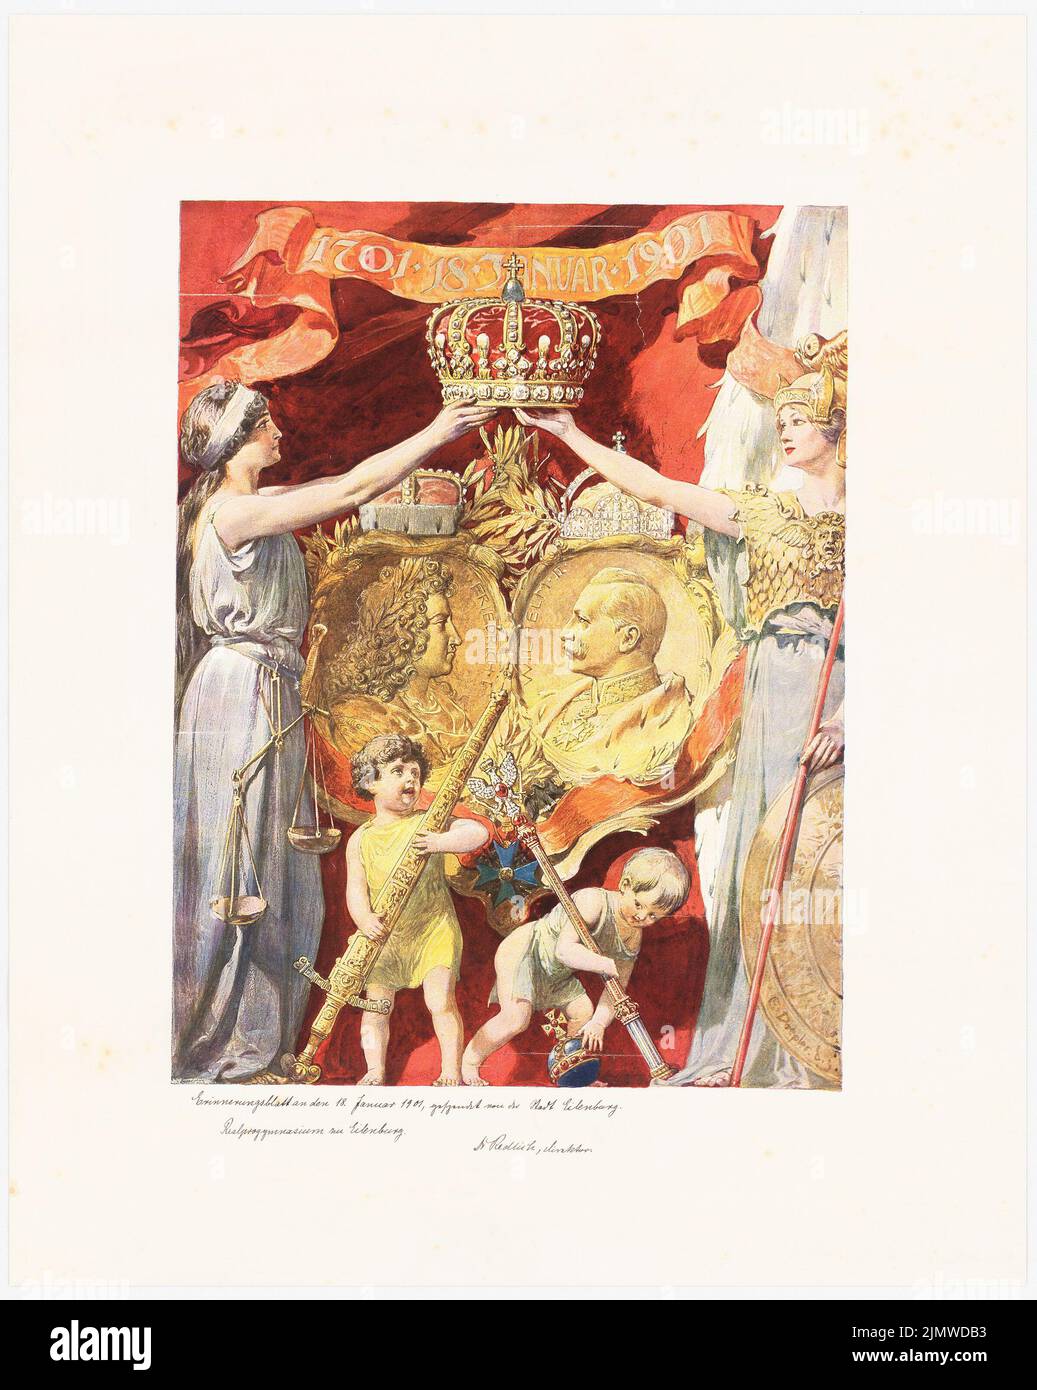 Doepler E., scheda memoria del 18 gennaio 1901 (01/18/1901): Friedrich I. e Wilhelm II nella vista laterale l'uno di fronte all'altro in oro (?) Medaglioni, destra (Athene con scudo) e sinistra (Justizia con Bilancia). Inchiostro sopra pressione colorato sulla scatola, 60,6 x 48,3 cm (compresi i bordi di scansione) Doepler E. : Erinnerungsblatt an den 18. Gennaio 1901 Foto Stock